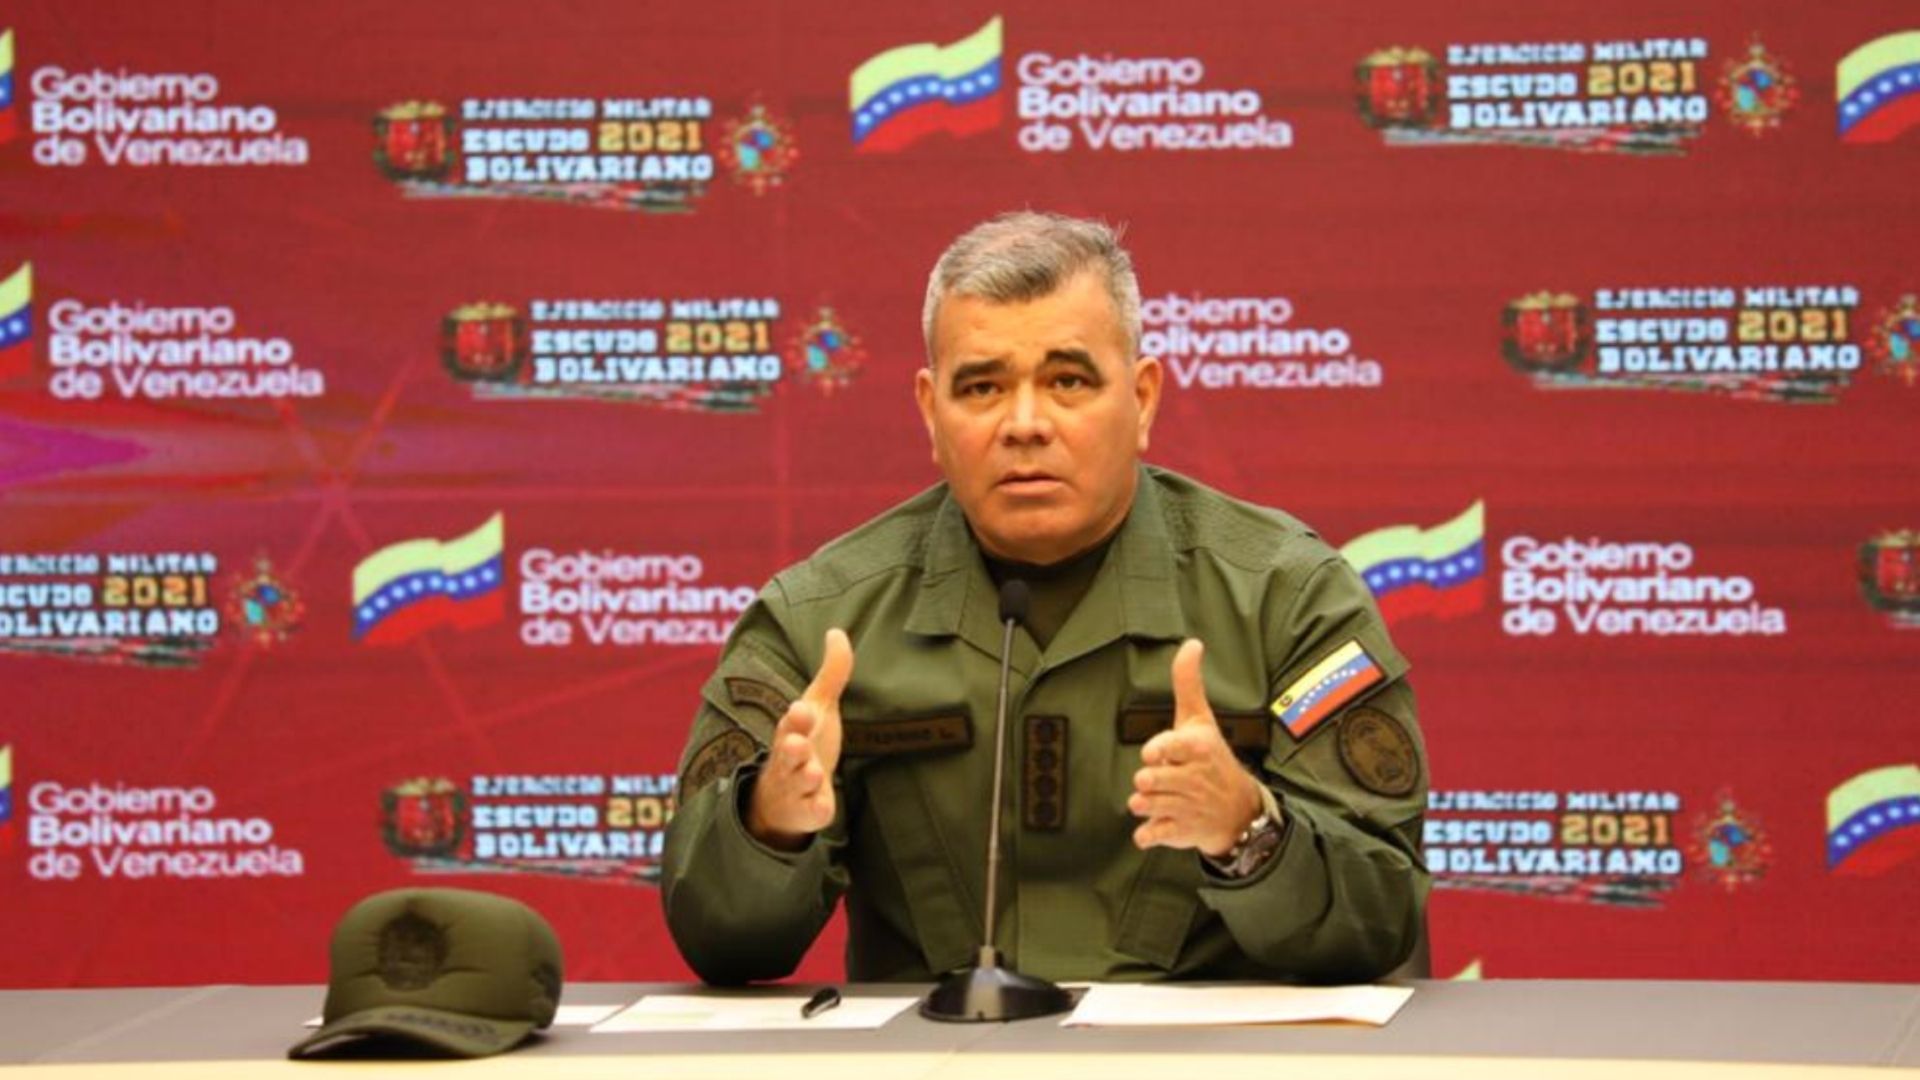 Ministro de defensa Vladimir Padrino López anuncia restablecimiento de relaciones militares con Colombia